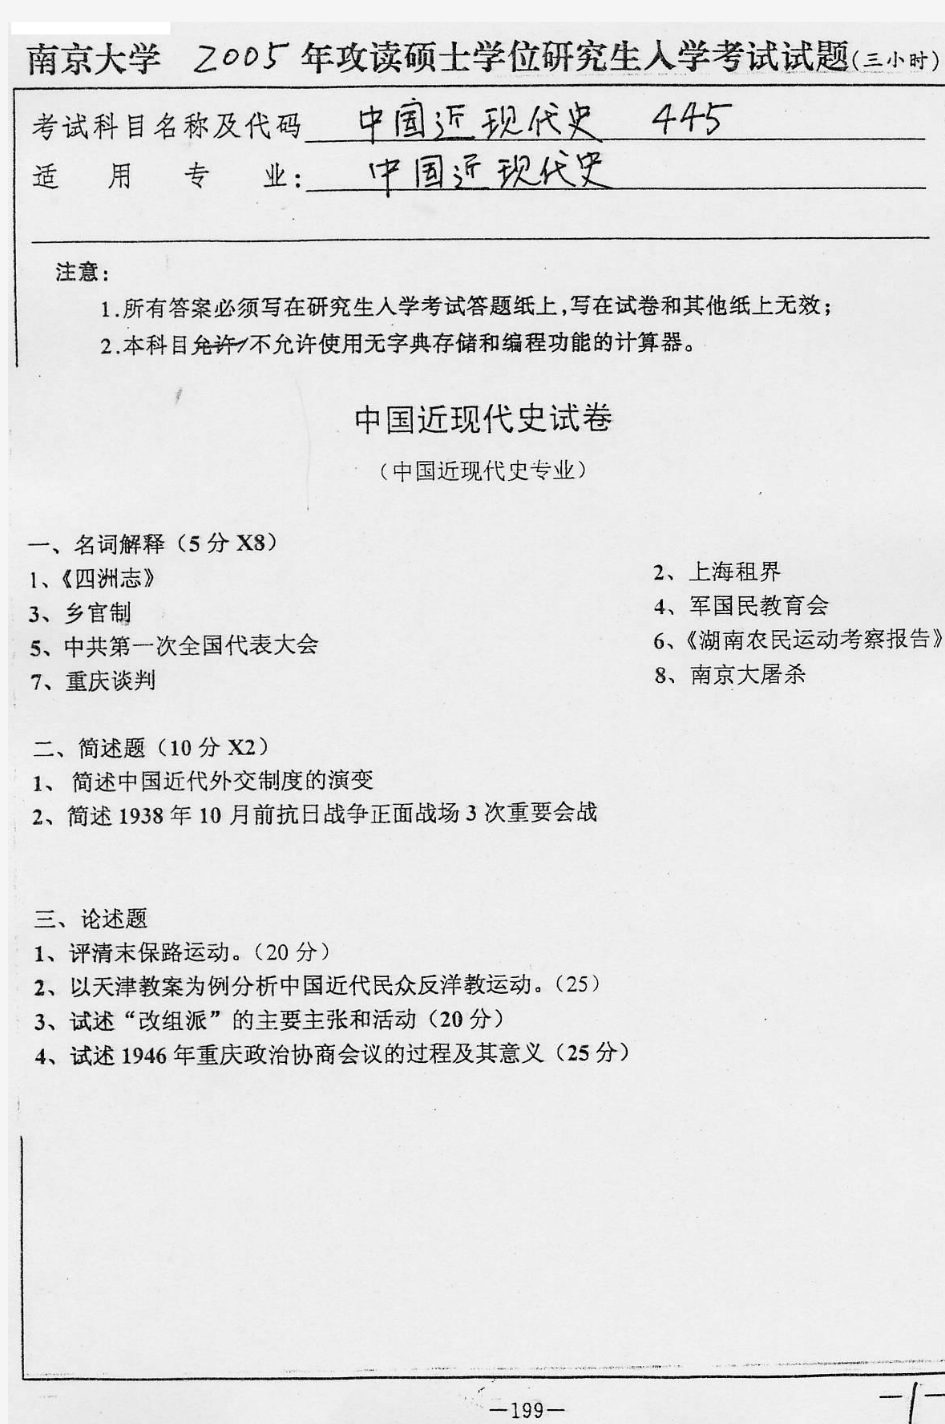 2005年南京大学中国近现代史考研真题-考研真题资料